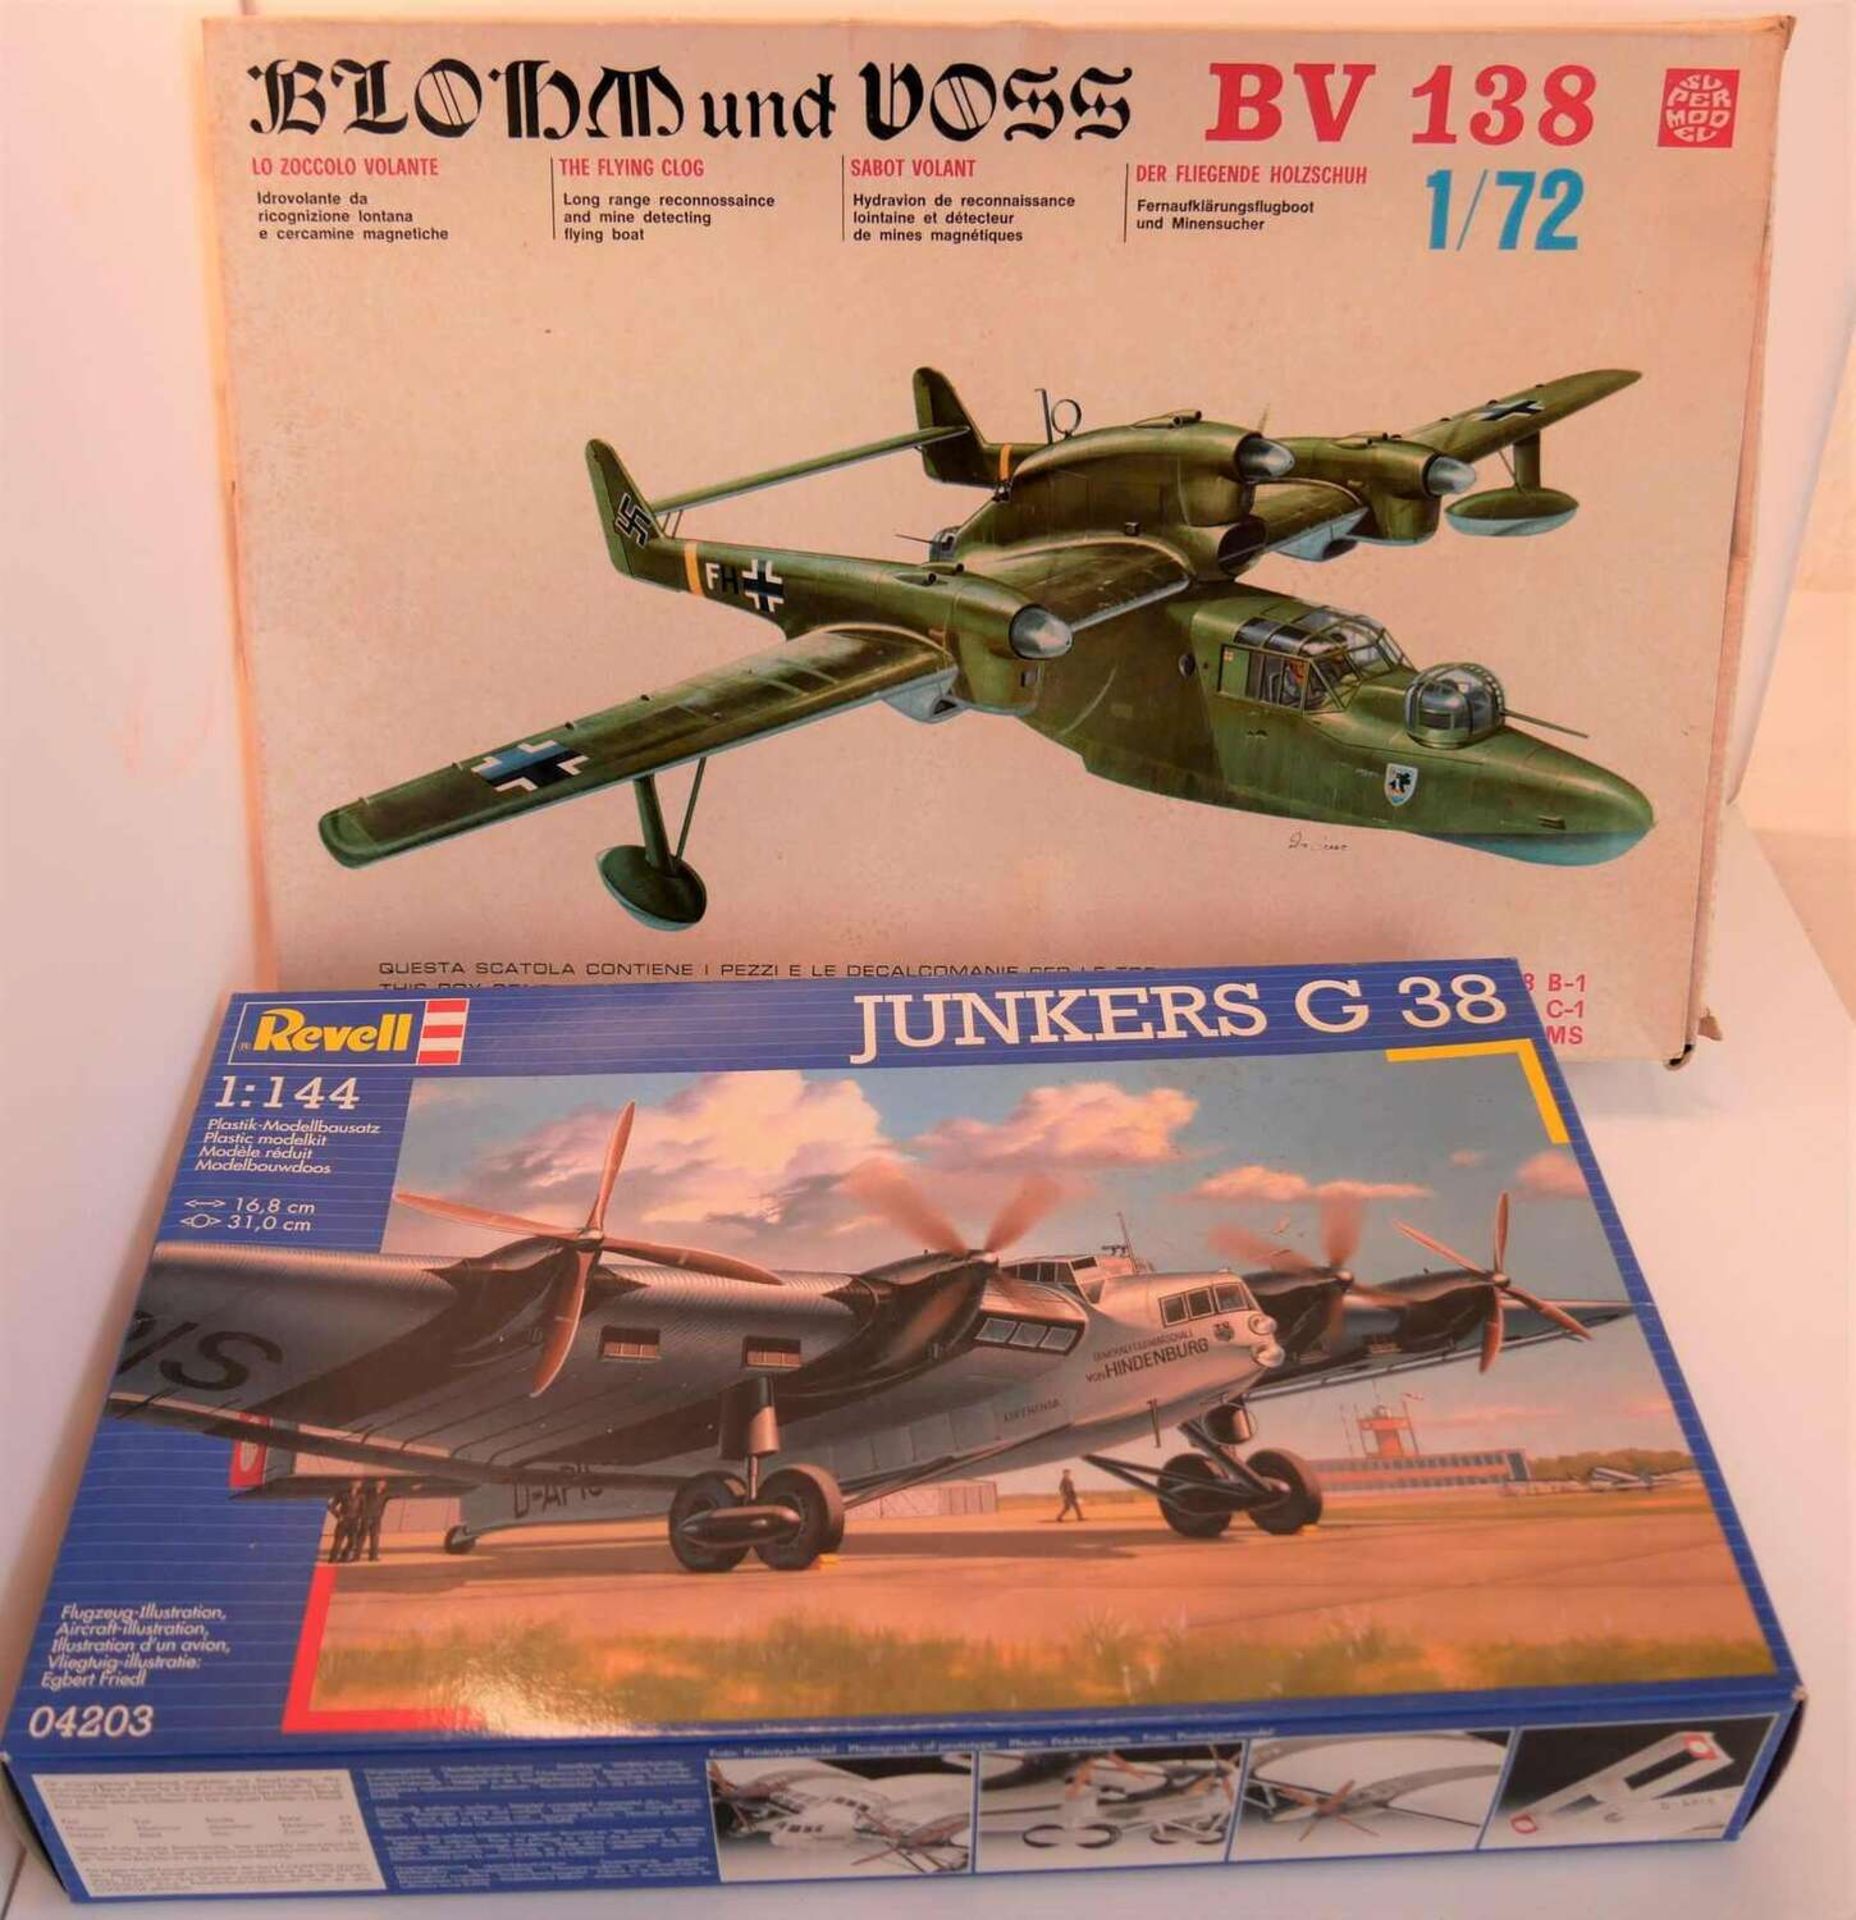 2 Modellbausätze - Blohm und Voss BV 138 Wasserflugzeug "Holzschuh" 1:72, und Junkers G38 1:144,